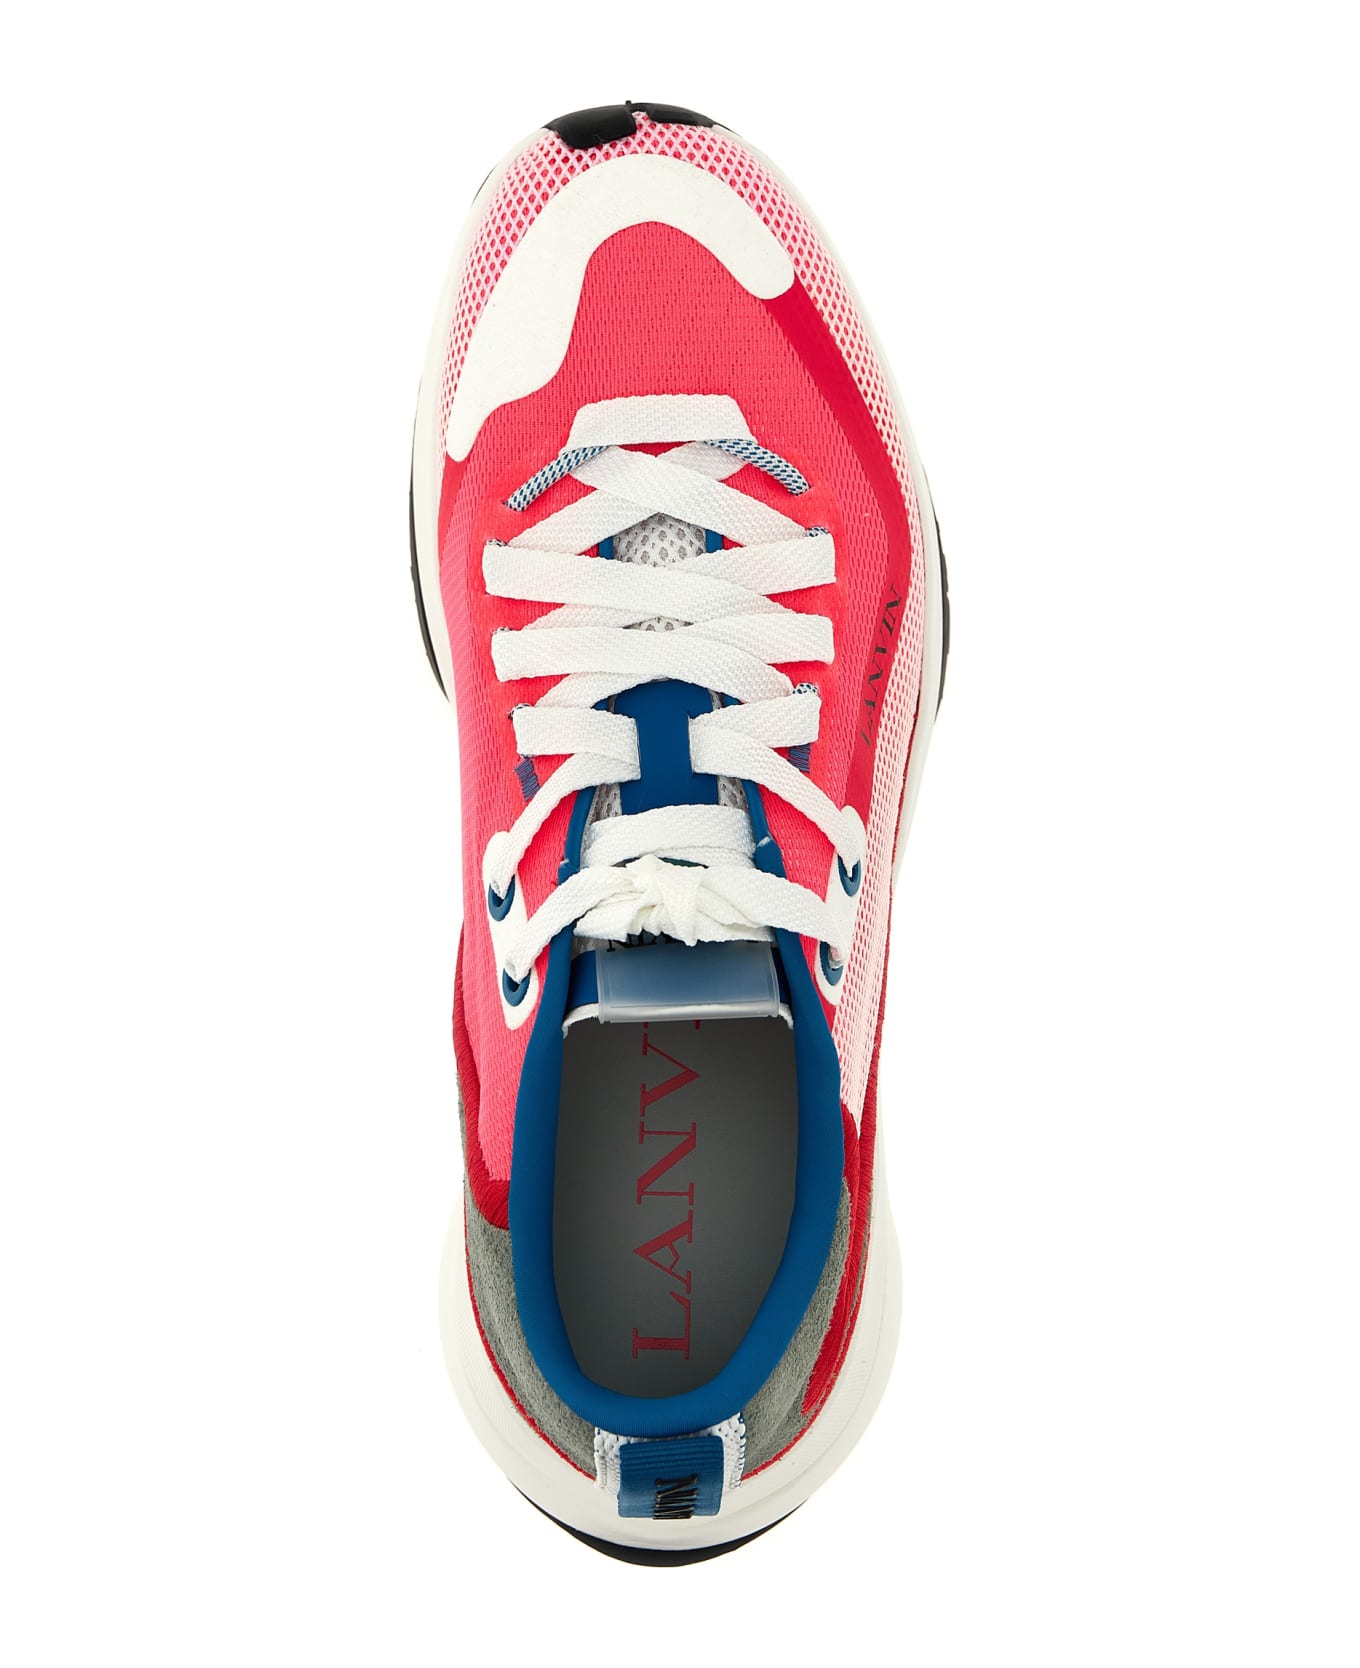 Lanvin 'runner' Sneakers - Optic White/red スニーカー